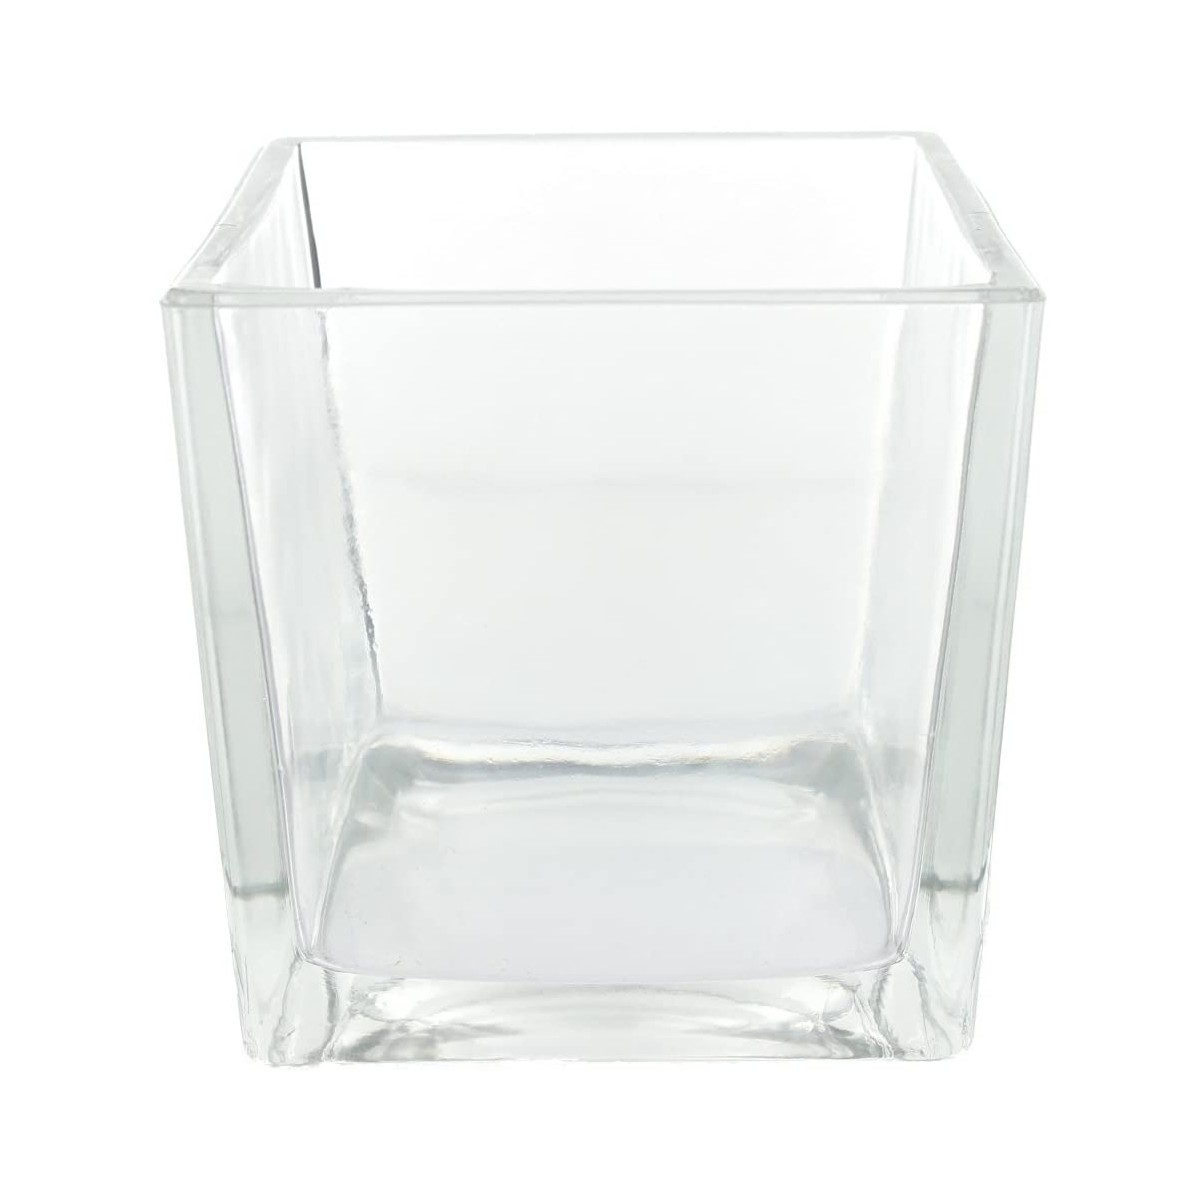 Contenitore cubo in vetro per confetti, allestimenti e confettate